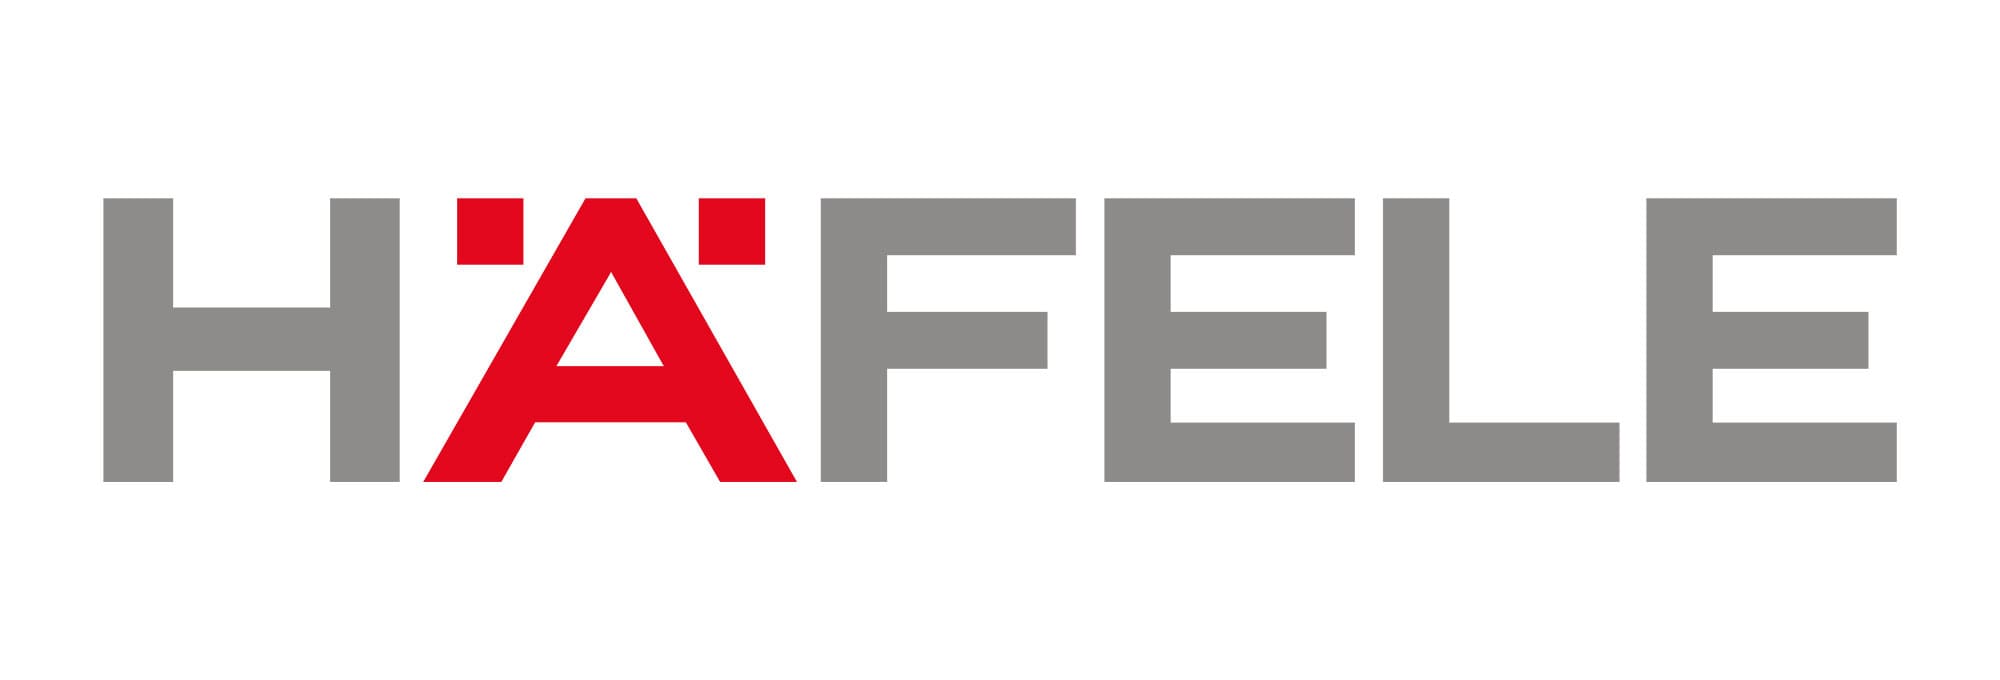 Hafele là thương hiệu hàng đầu chuyên sản xuất các thiết bị nhà bếp với sự sang trọng đầy tinh tế.